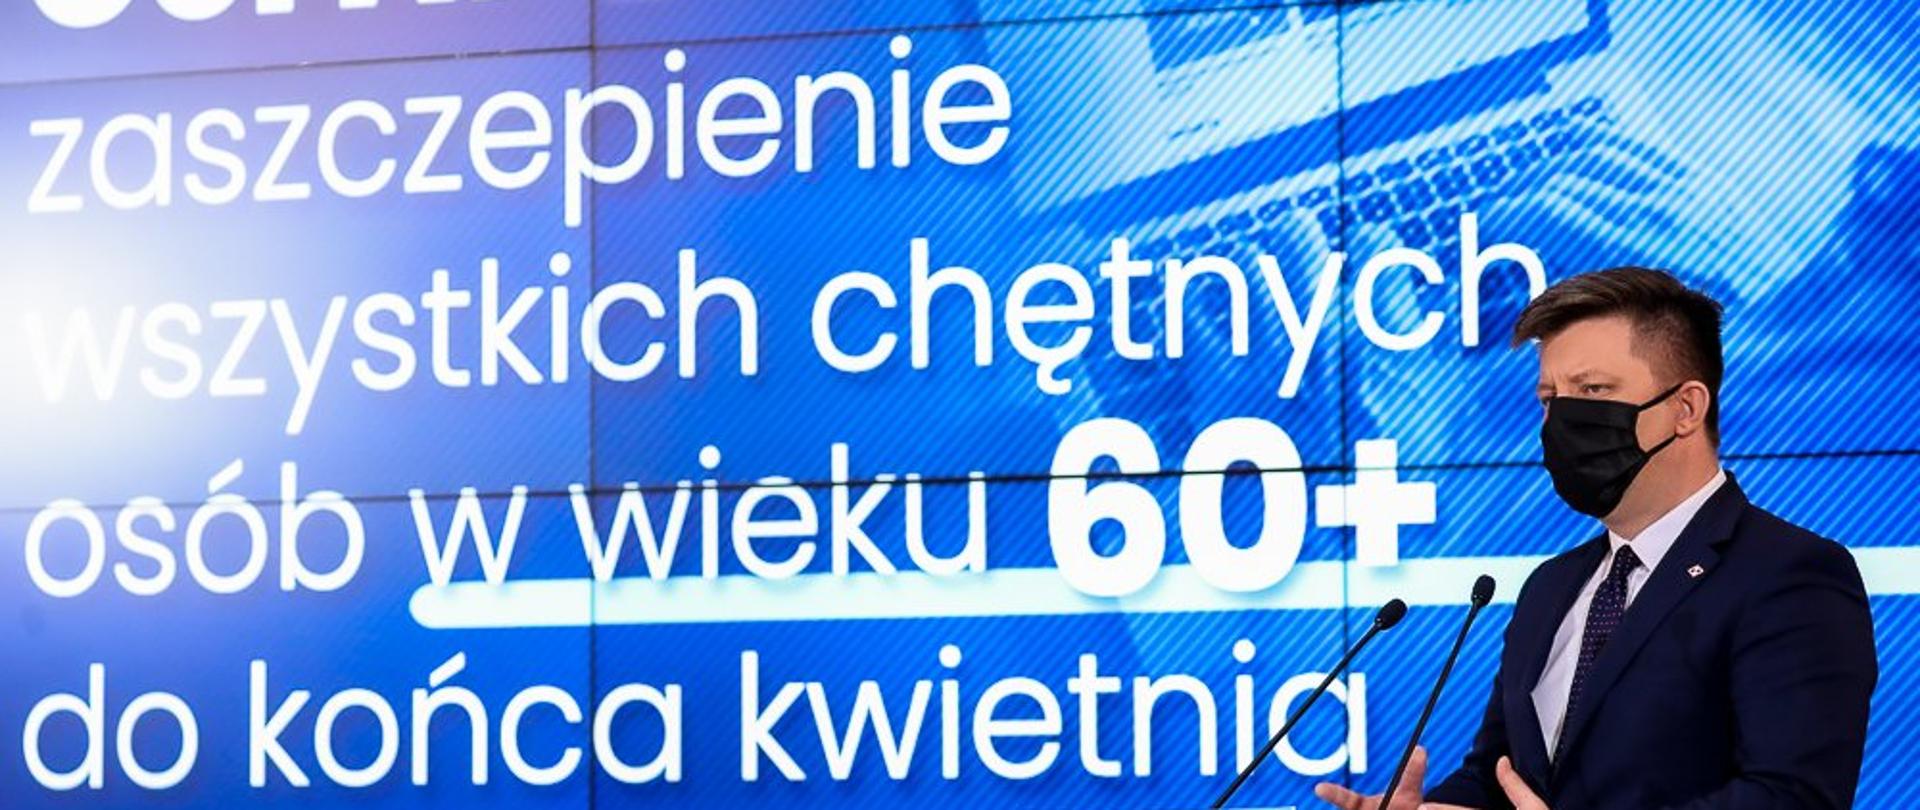 Na zdjęciu min. M. Dworczyk, w tle prezentacja z napisem: Cel NPS - zaszczepienie wszystkich chętnych osób w wieku 60+ do końca kwietnia